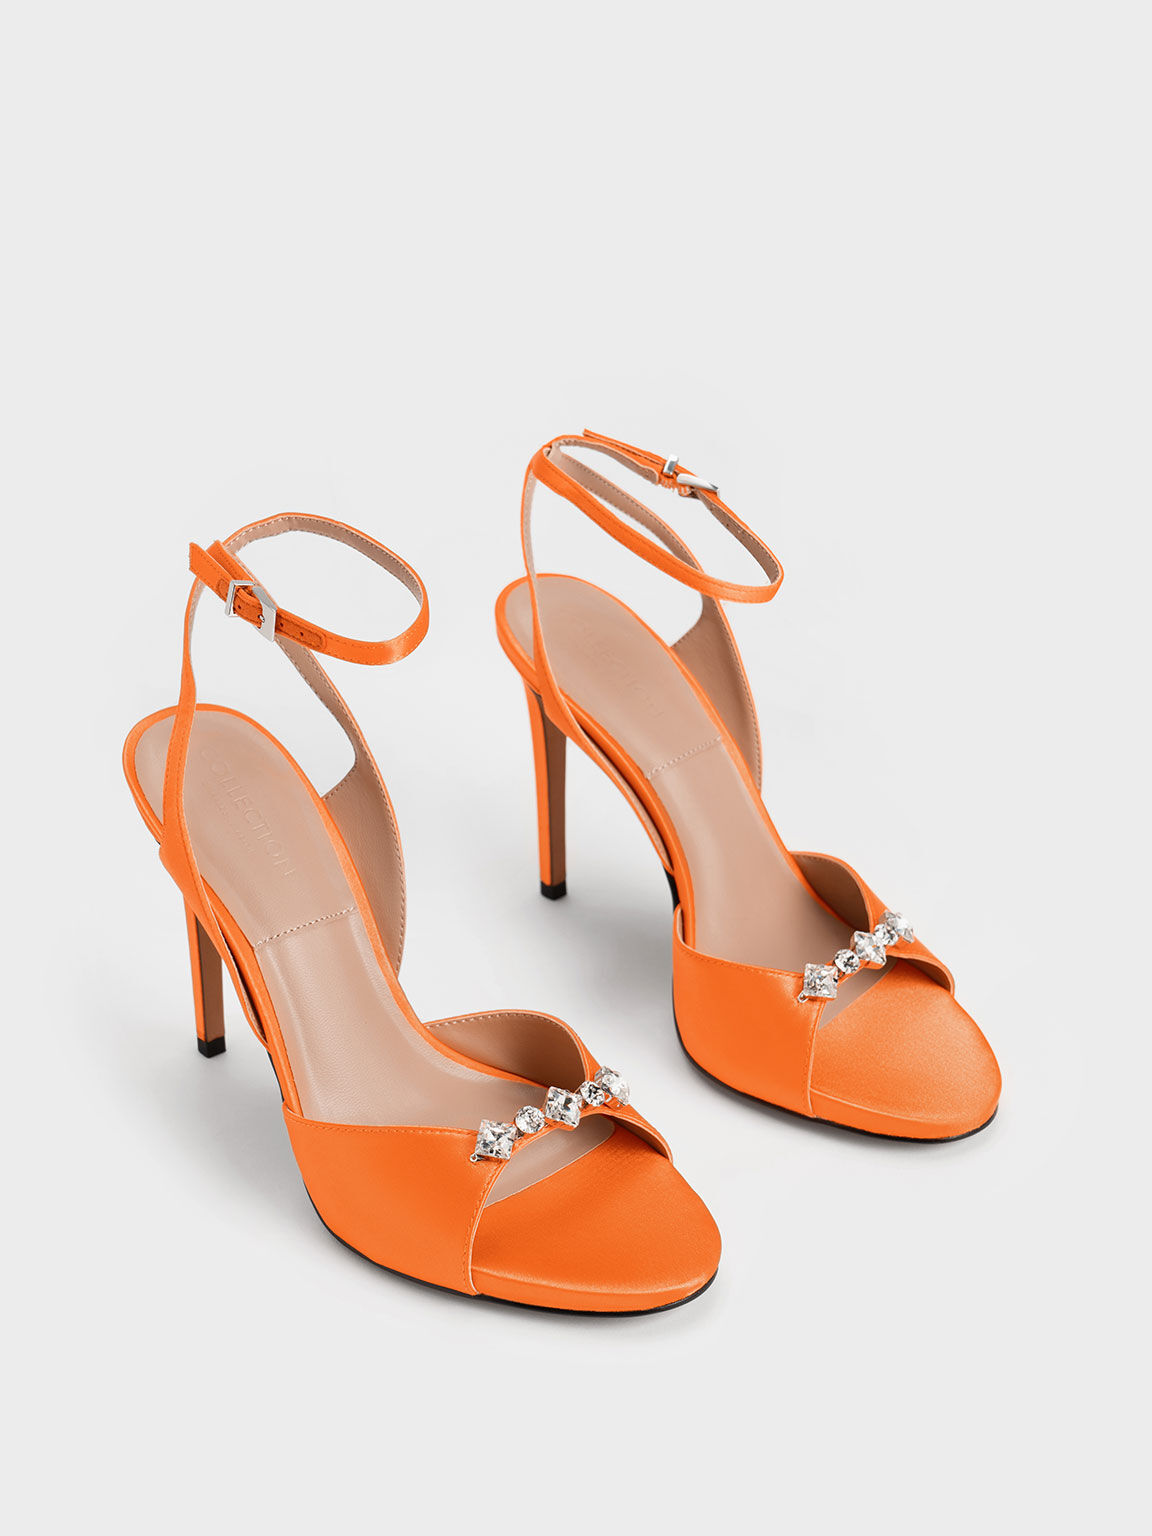 Metallic Gem-Encrusted Ankle Strap Sandals, Orange, hi-res